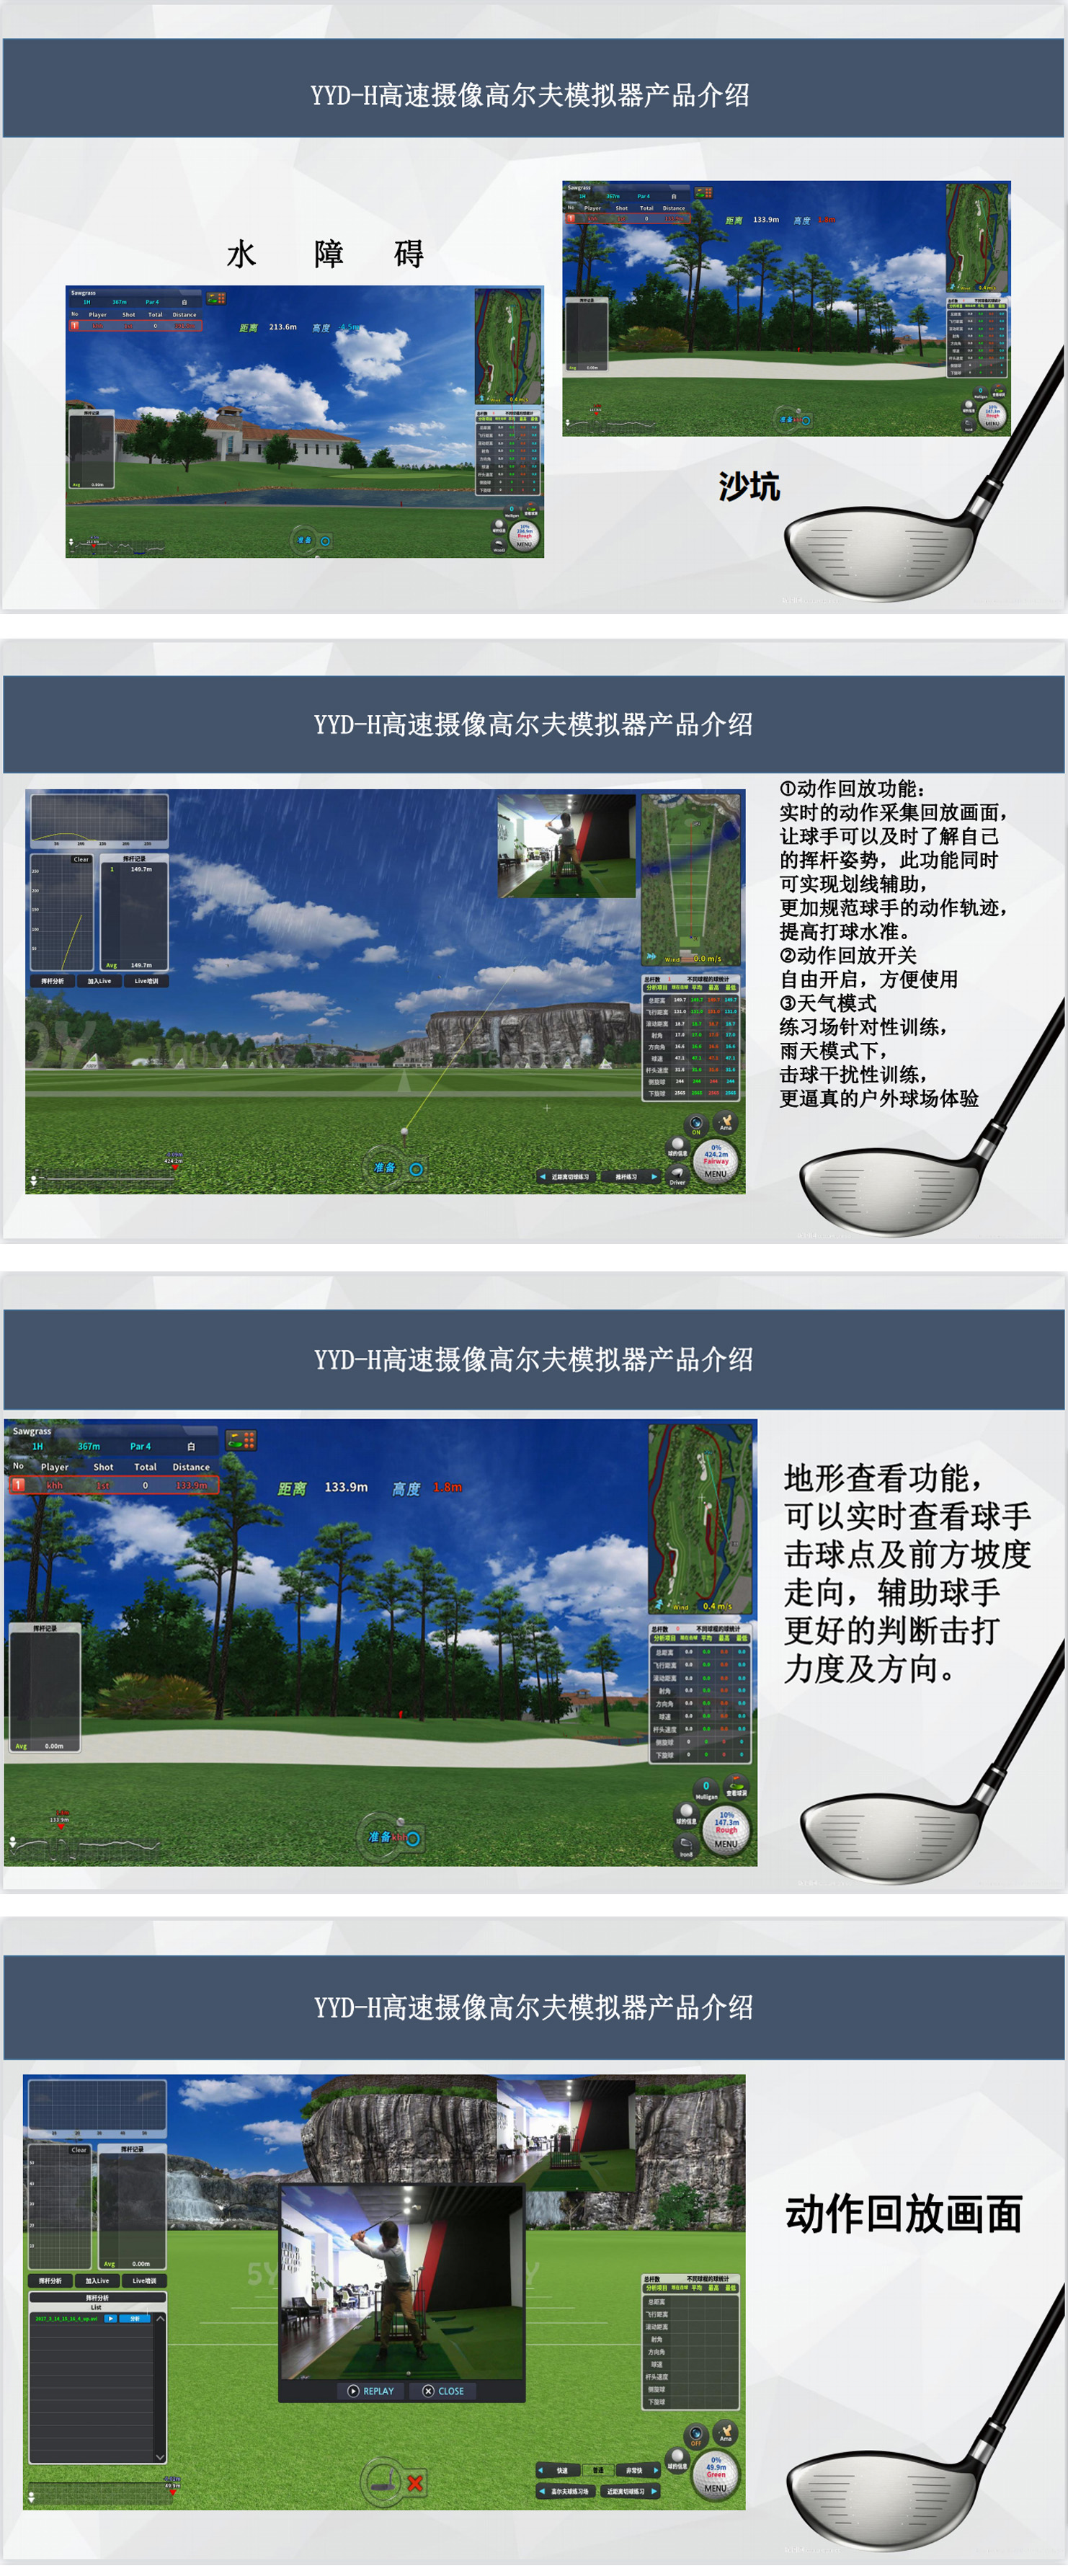 高尔夫模拟器设备  4.jpg